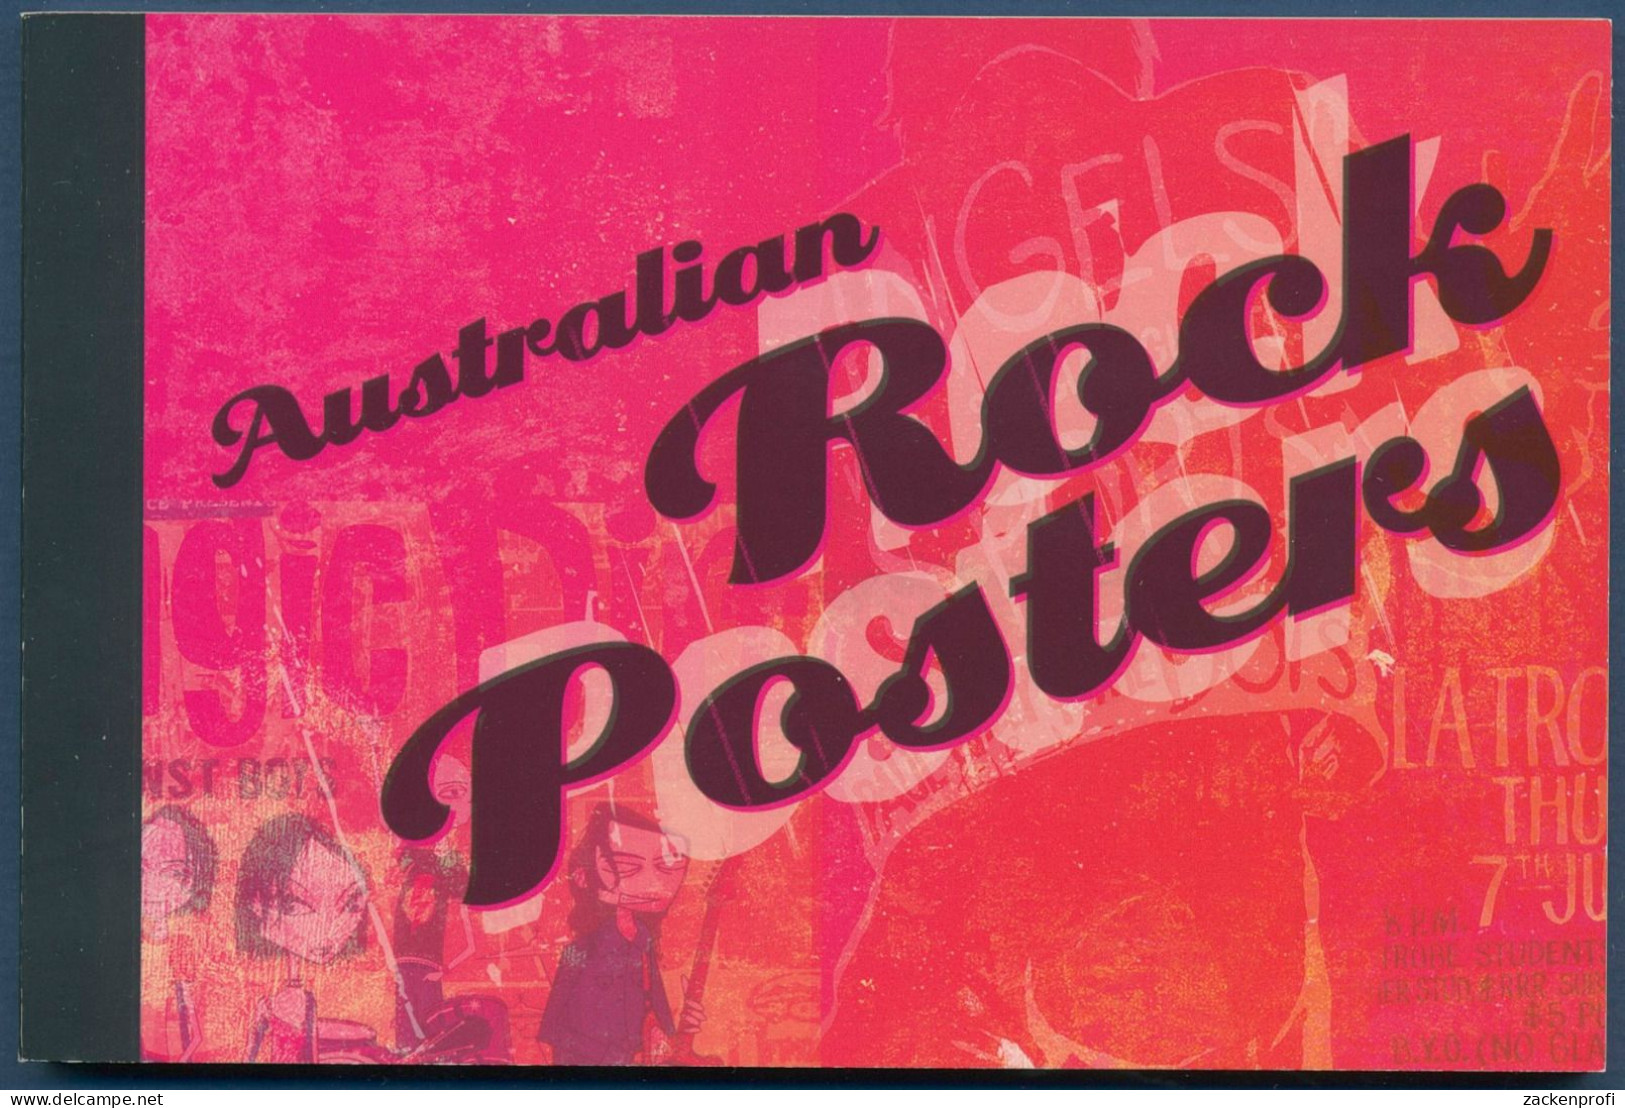 Australien 2006 Poster Rockkonzerte Rolling Stones MH 250 Postfrisch (C40390) - Booklets